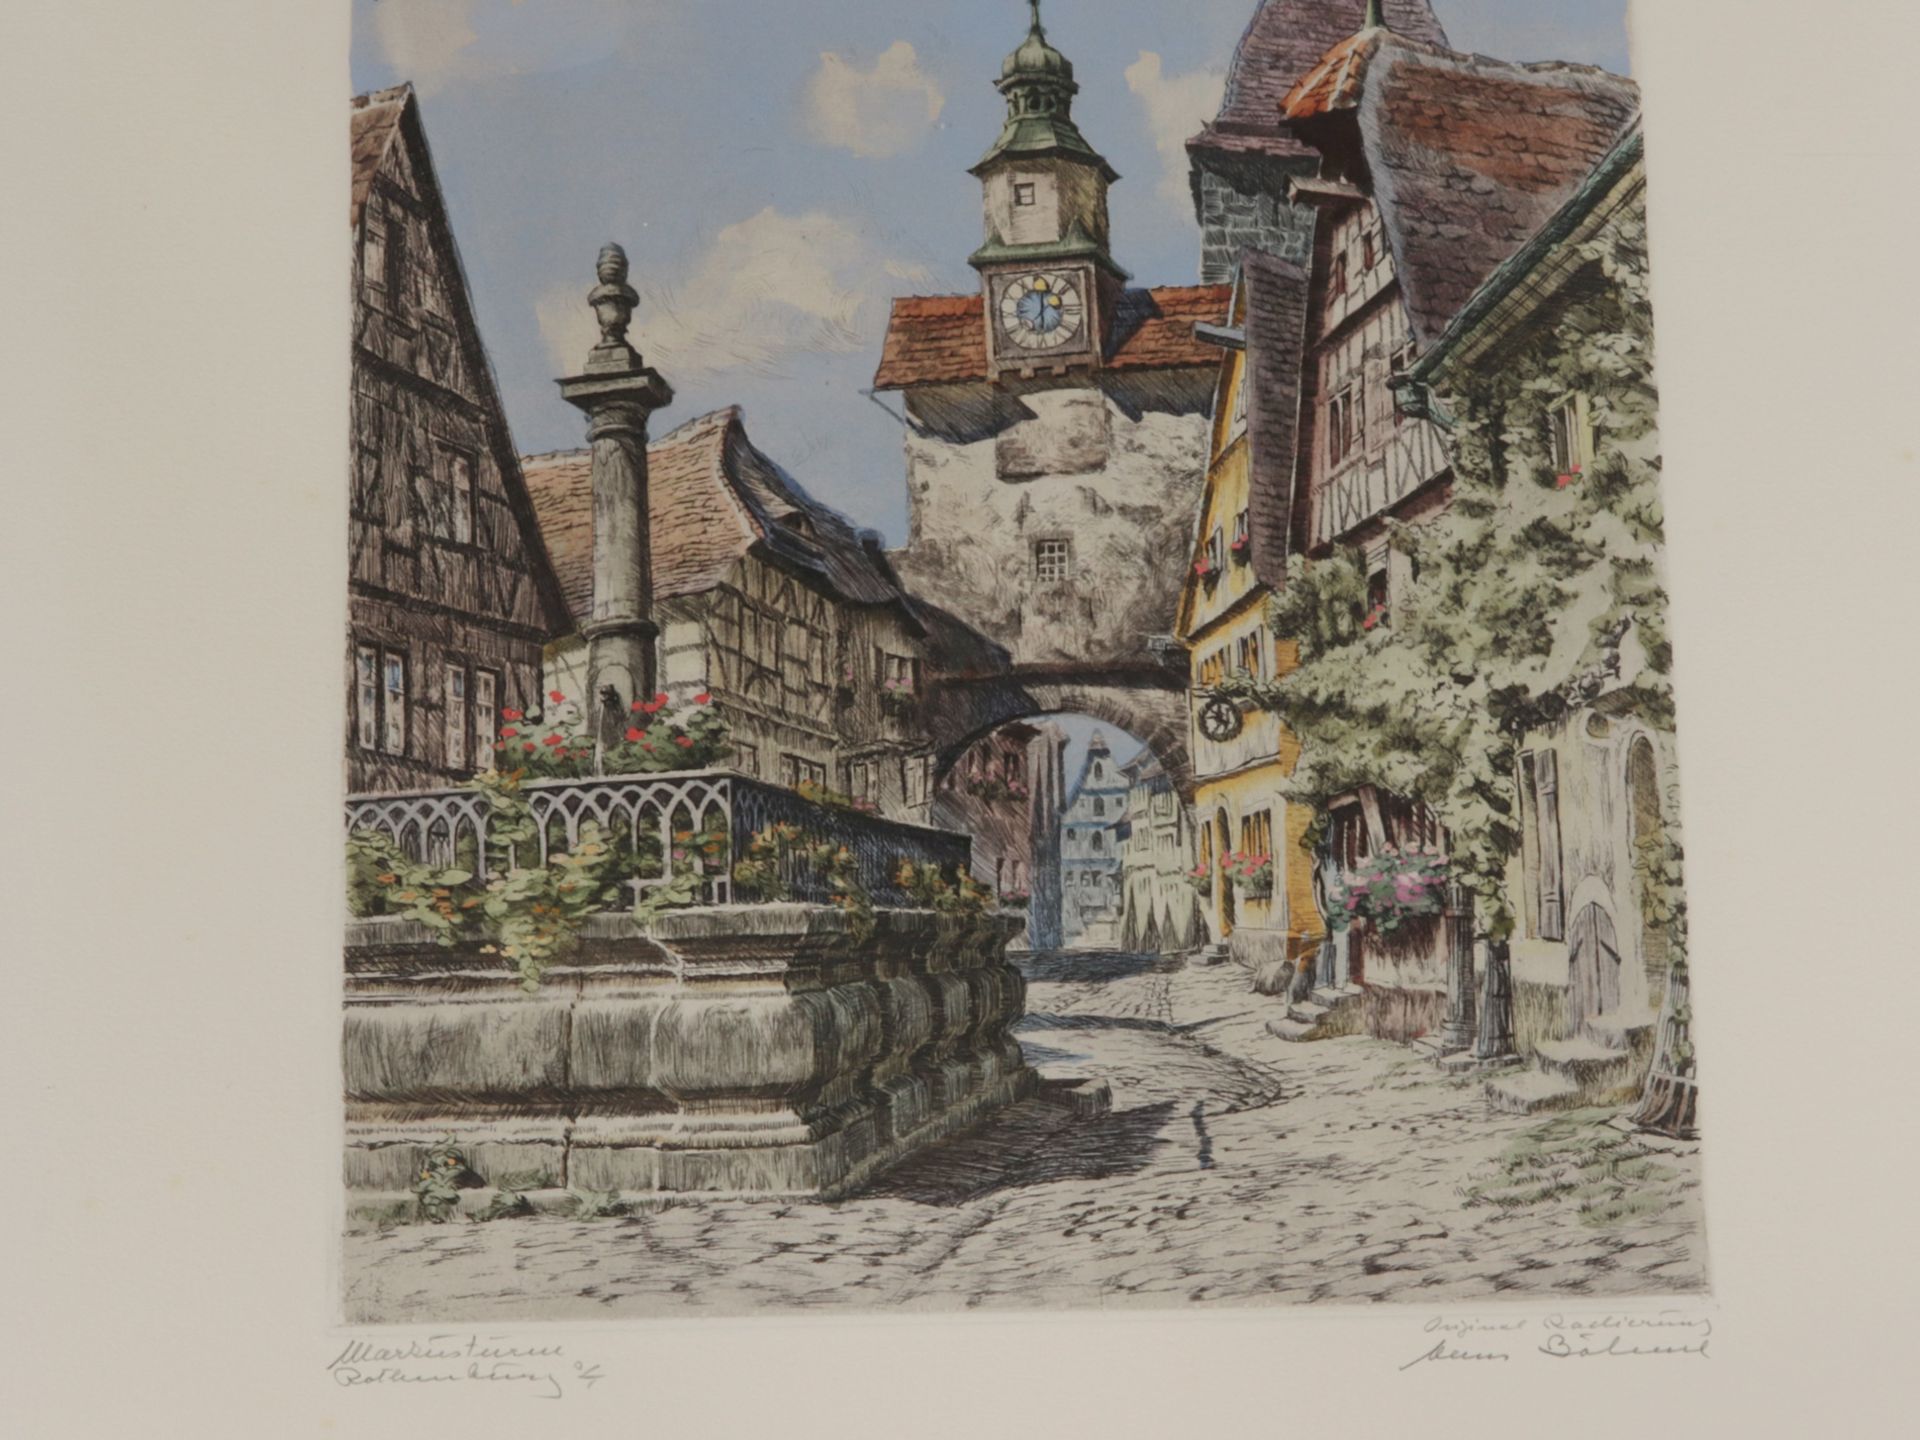 Rothenburg o.T. - Altstadt - Image 3 of 4